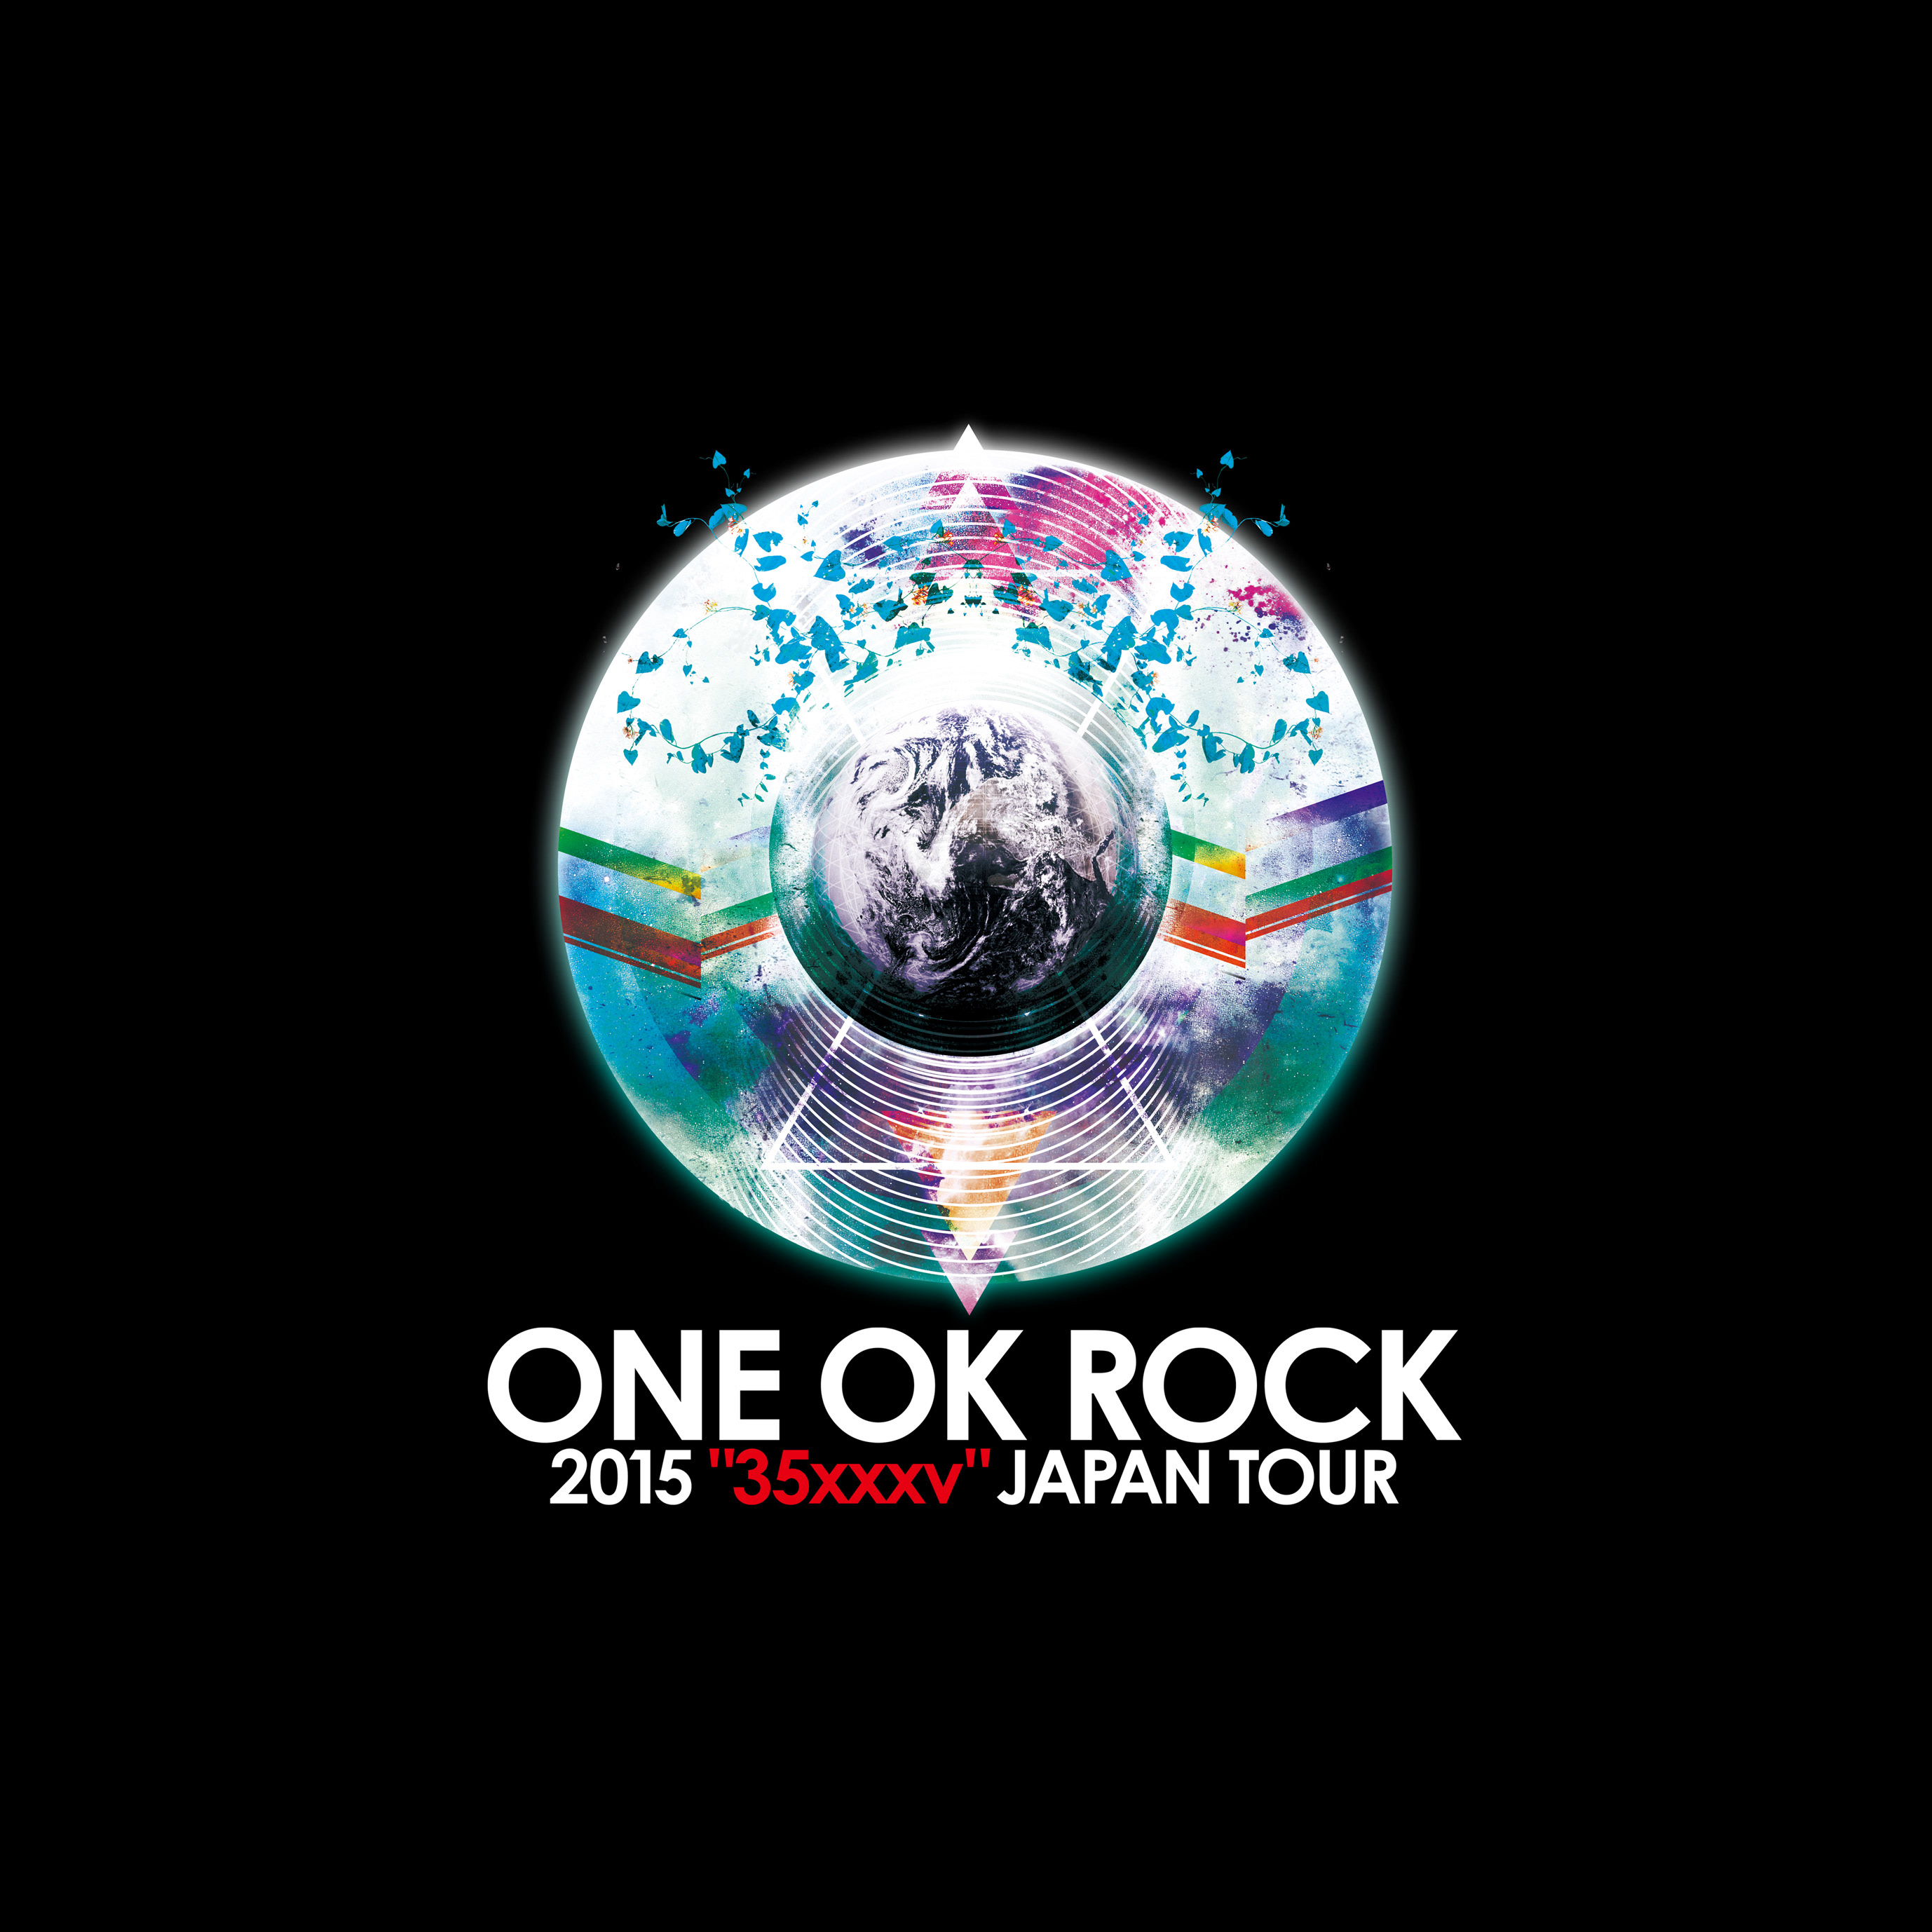 Kenta Mori One Ok Rock 15 35xxxv Japan Tour